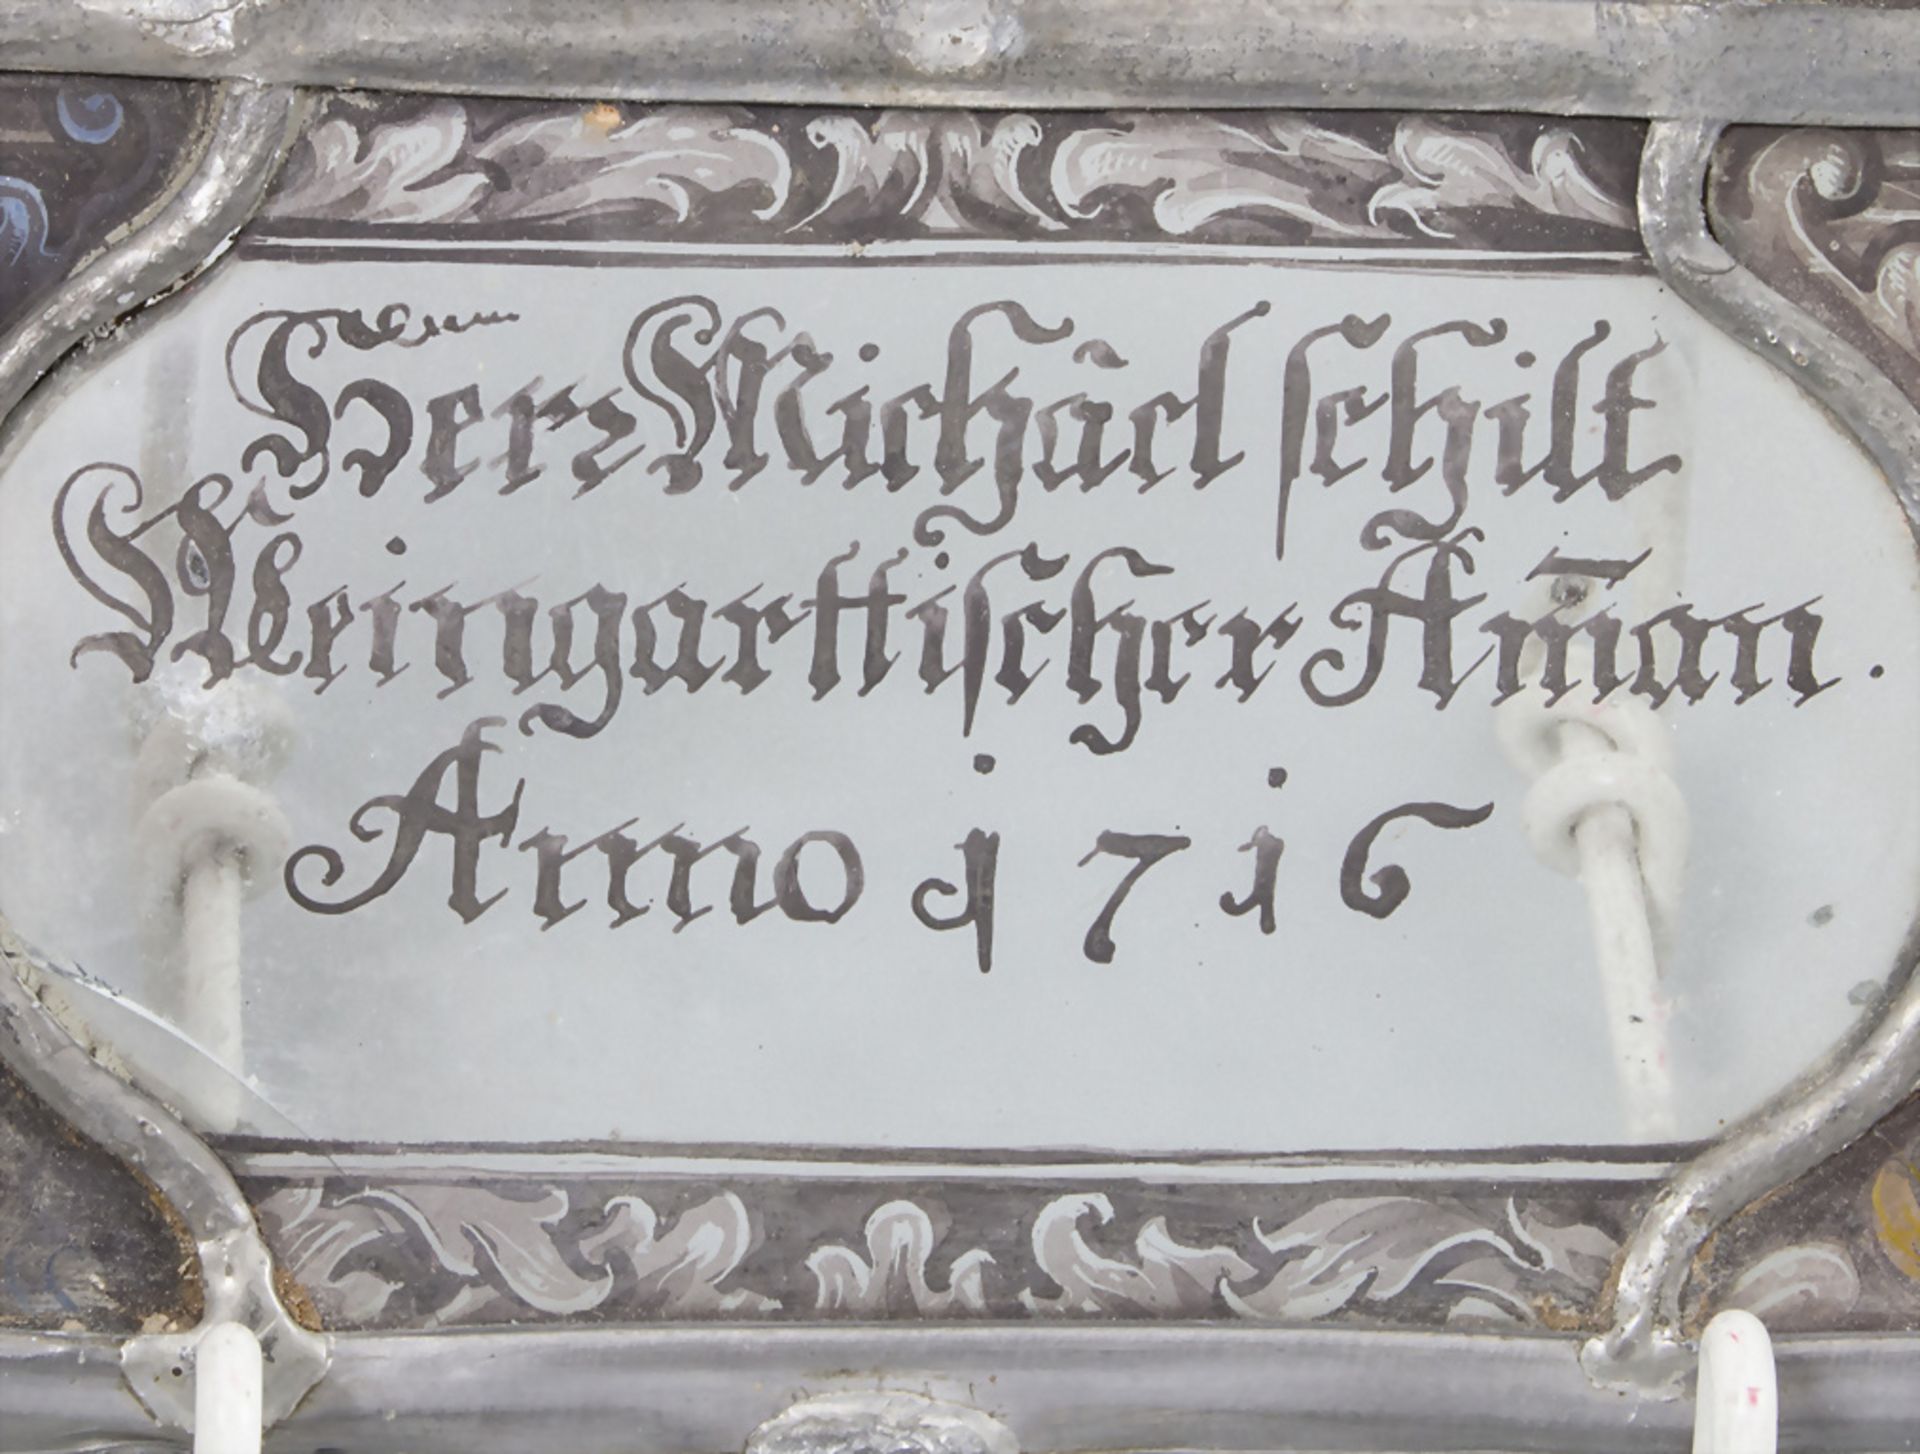 Bleiverglasung 'Herr Michael Schilt Weingarttischer Amman' / A lead glazing, deutsch, 1716 - Image 2 of 3